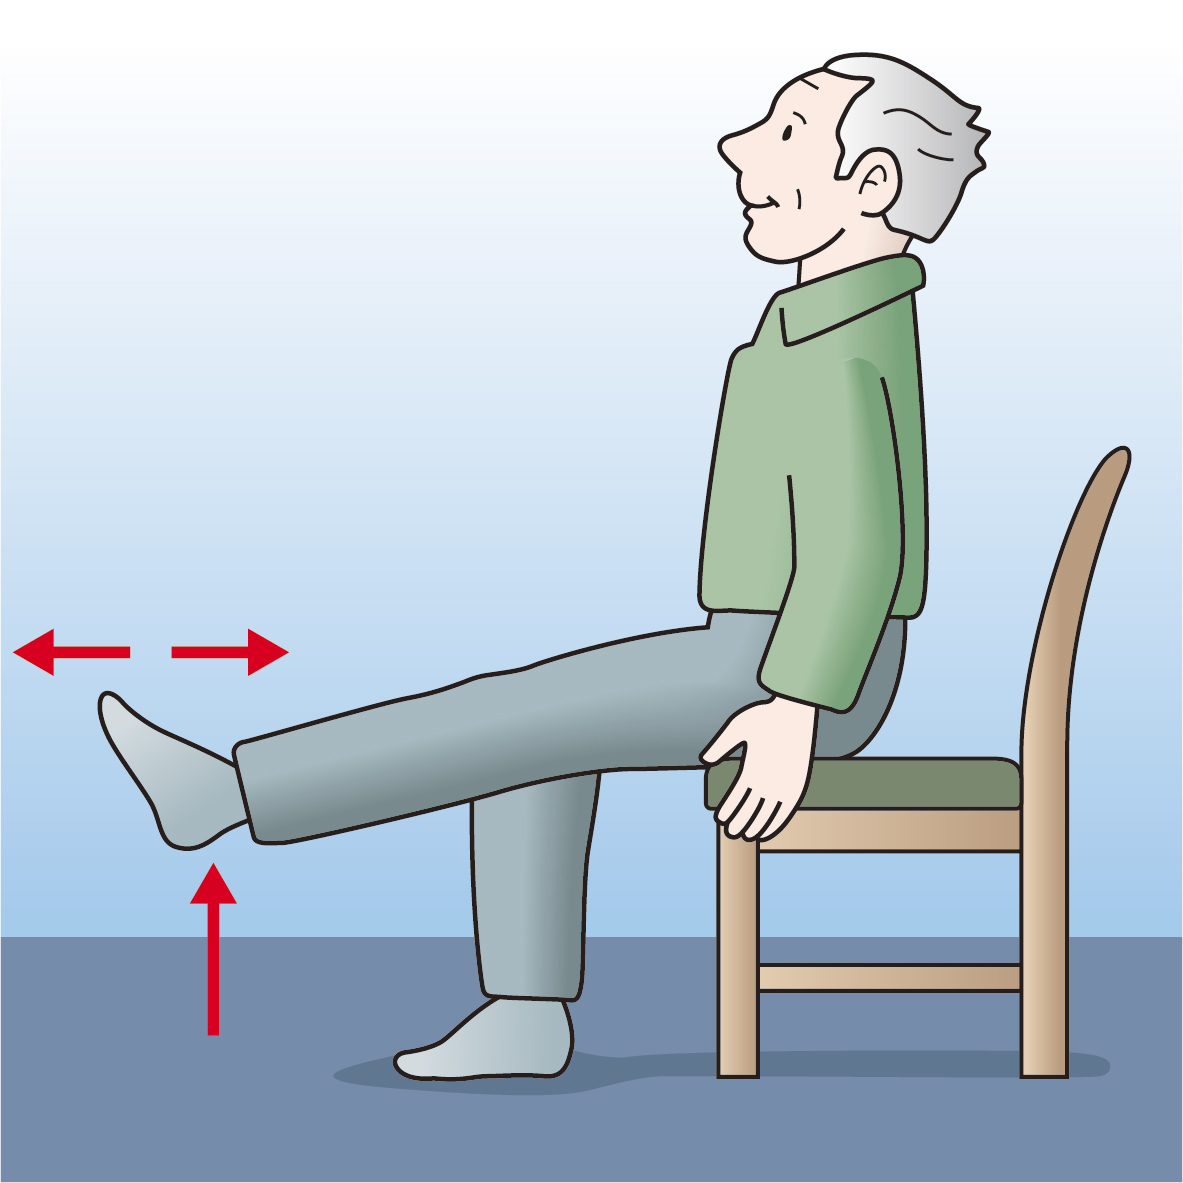 持病や痛みがある場合は医師に相談の上、椅子体操から